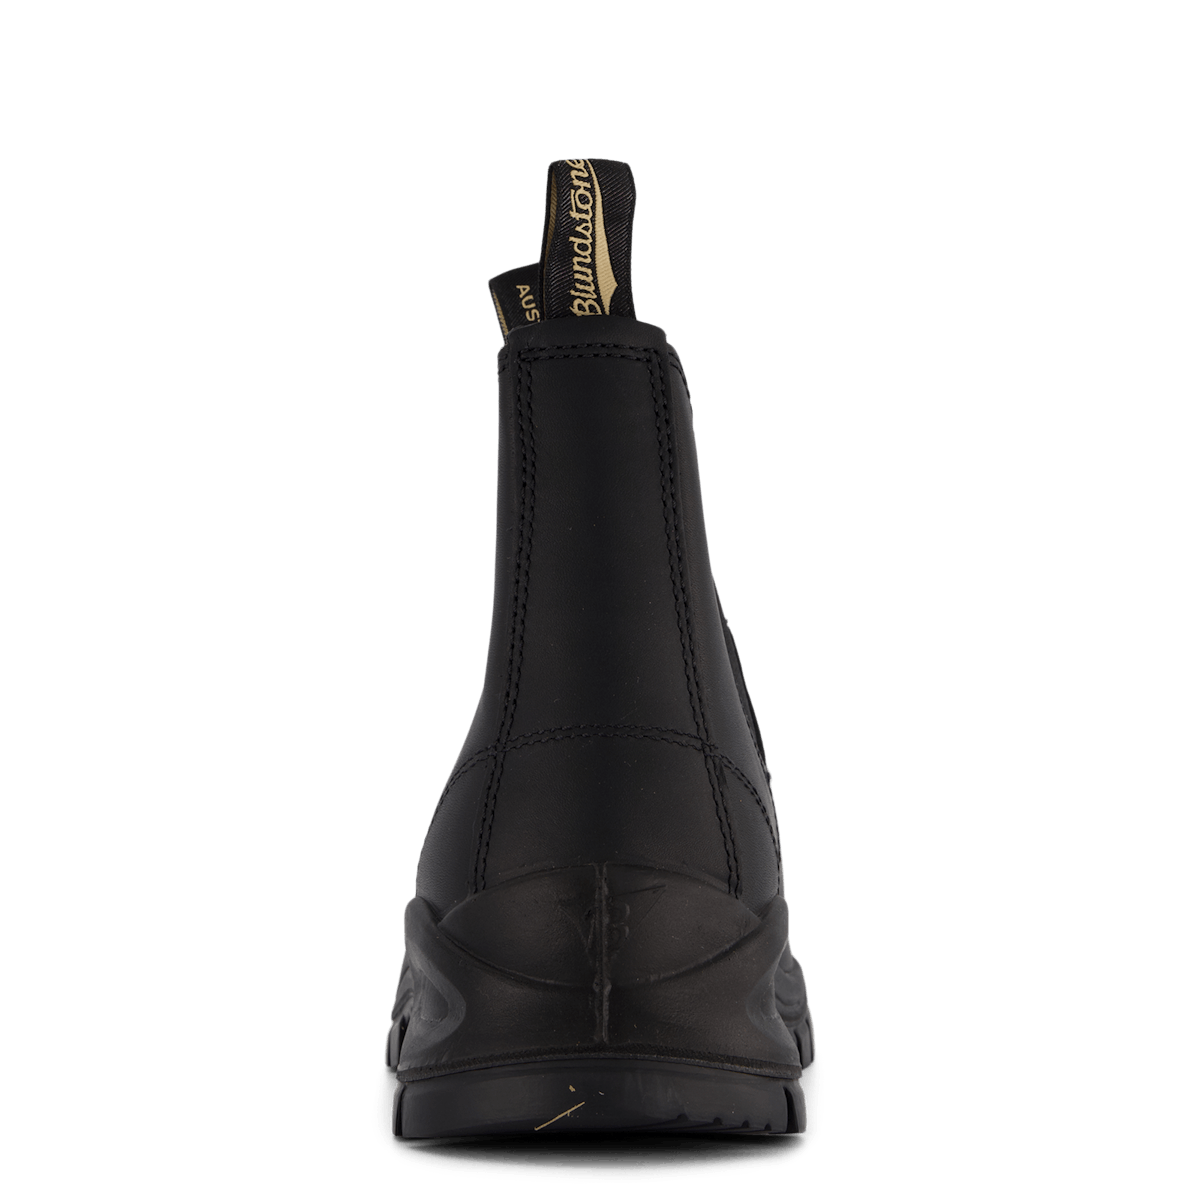 BL 2240 Chunkt Chelsea Boot Black